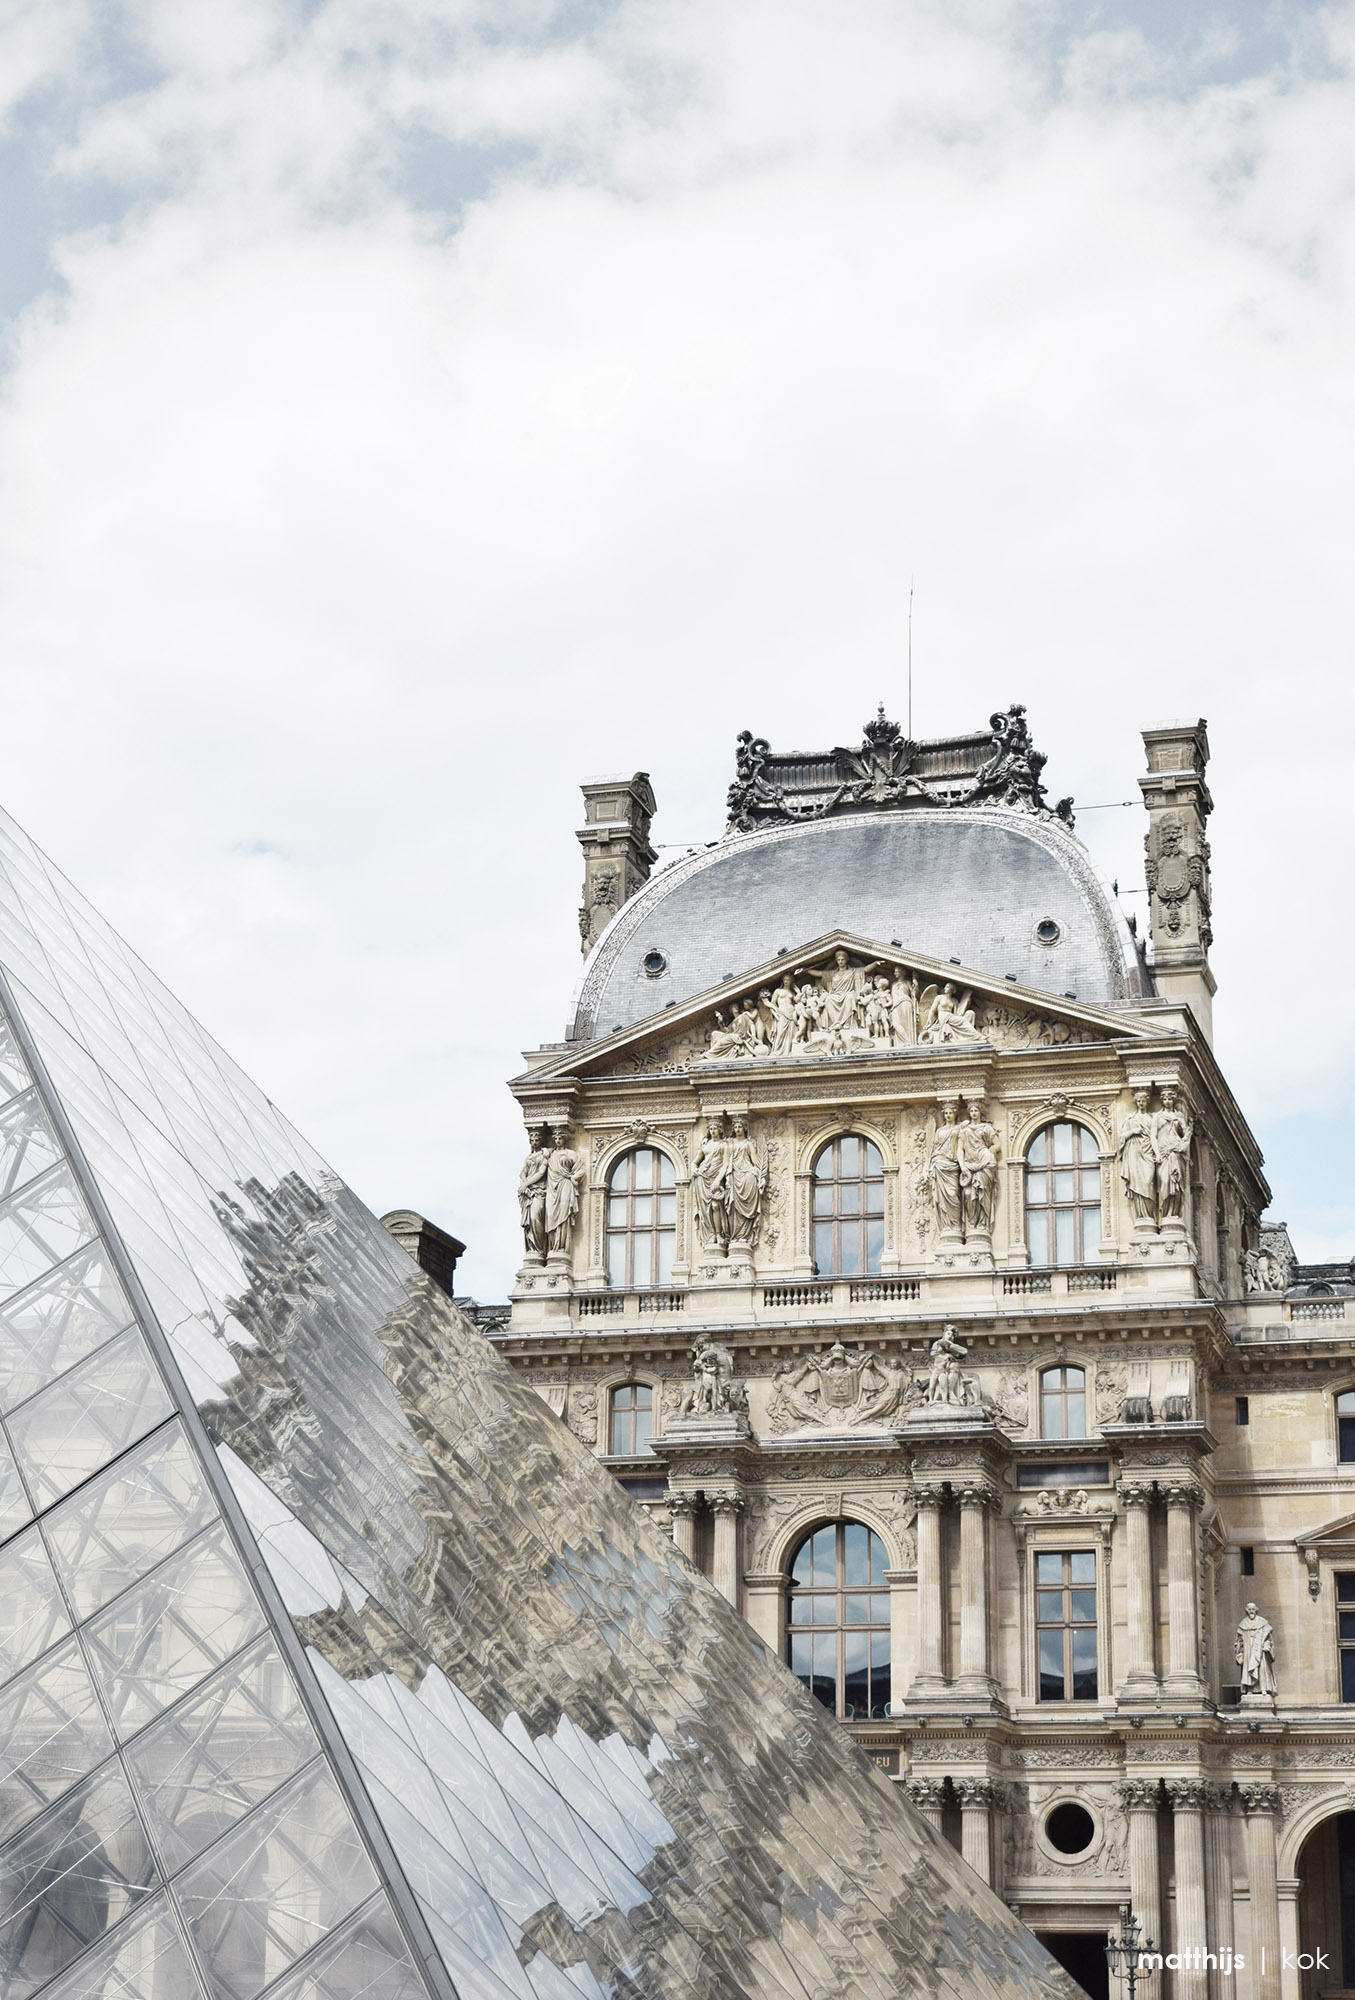 The Louvre, Paris | Photo by Matthijs Kok